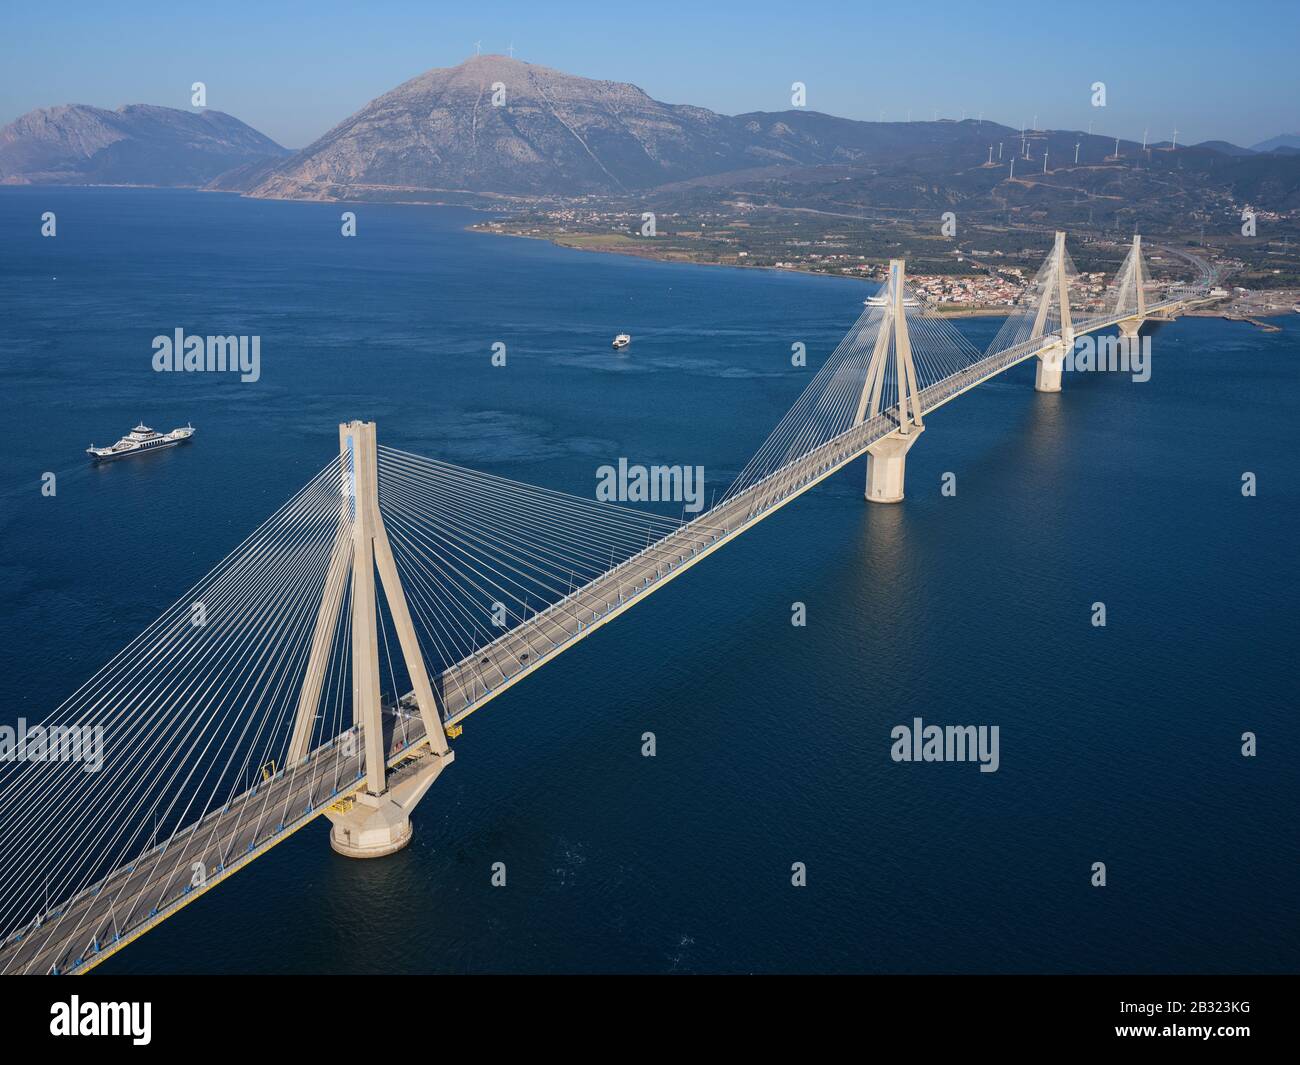 LUFTAUFNAHME. Große Hängebrücke mit Kabelgestelle, die den engsten Teil des Golfs von Korinth überquert. Zwischen den Städten Rio und Antirrio, Griechenland. Stockfoto